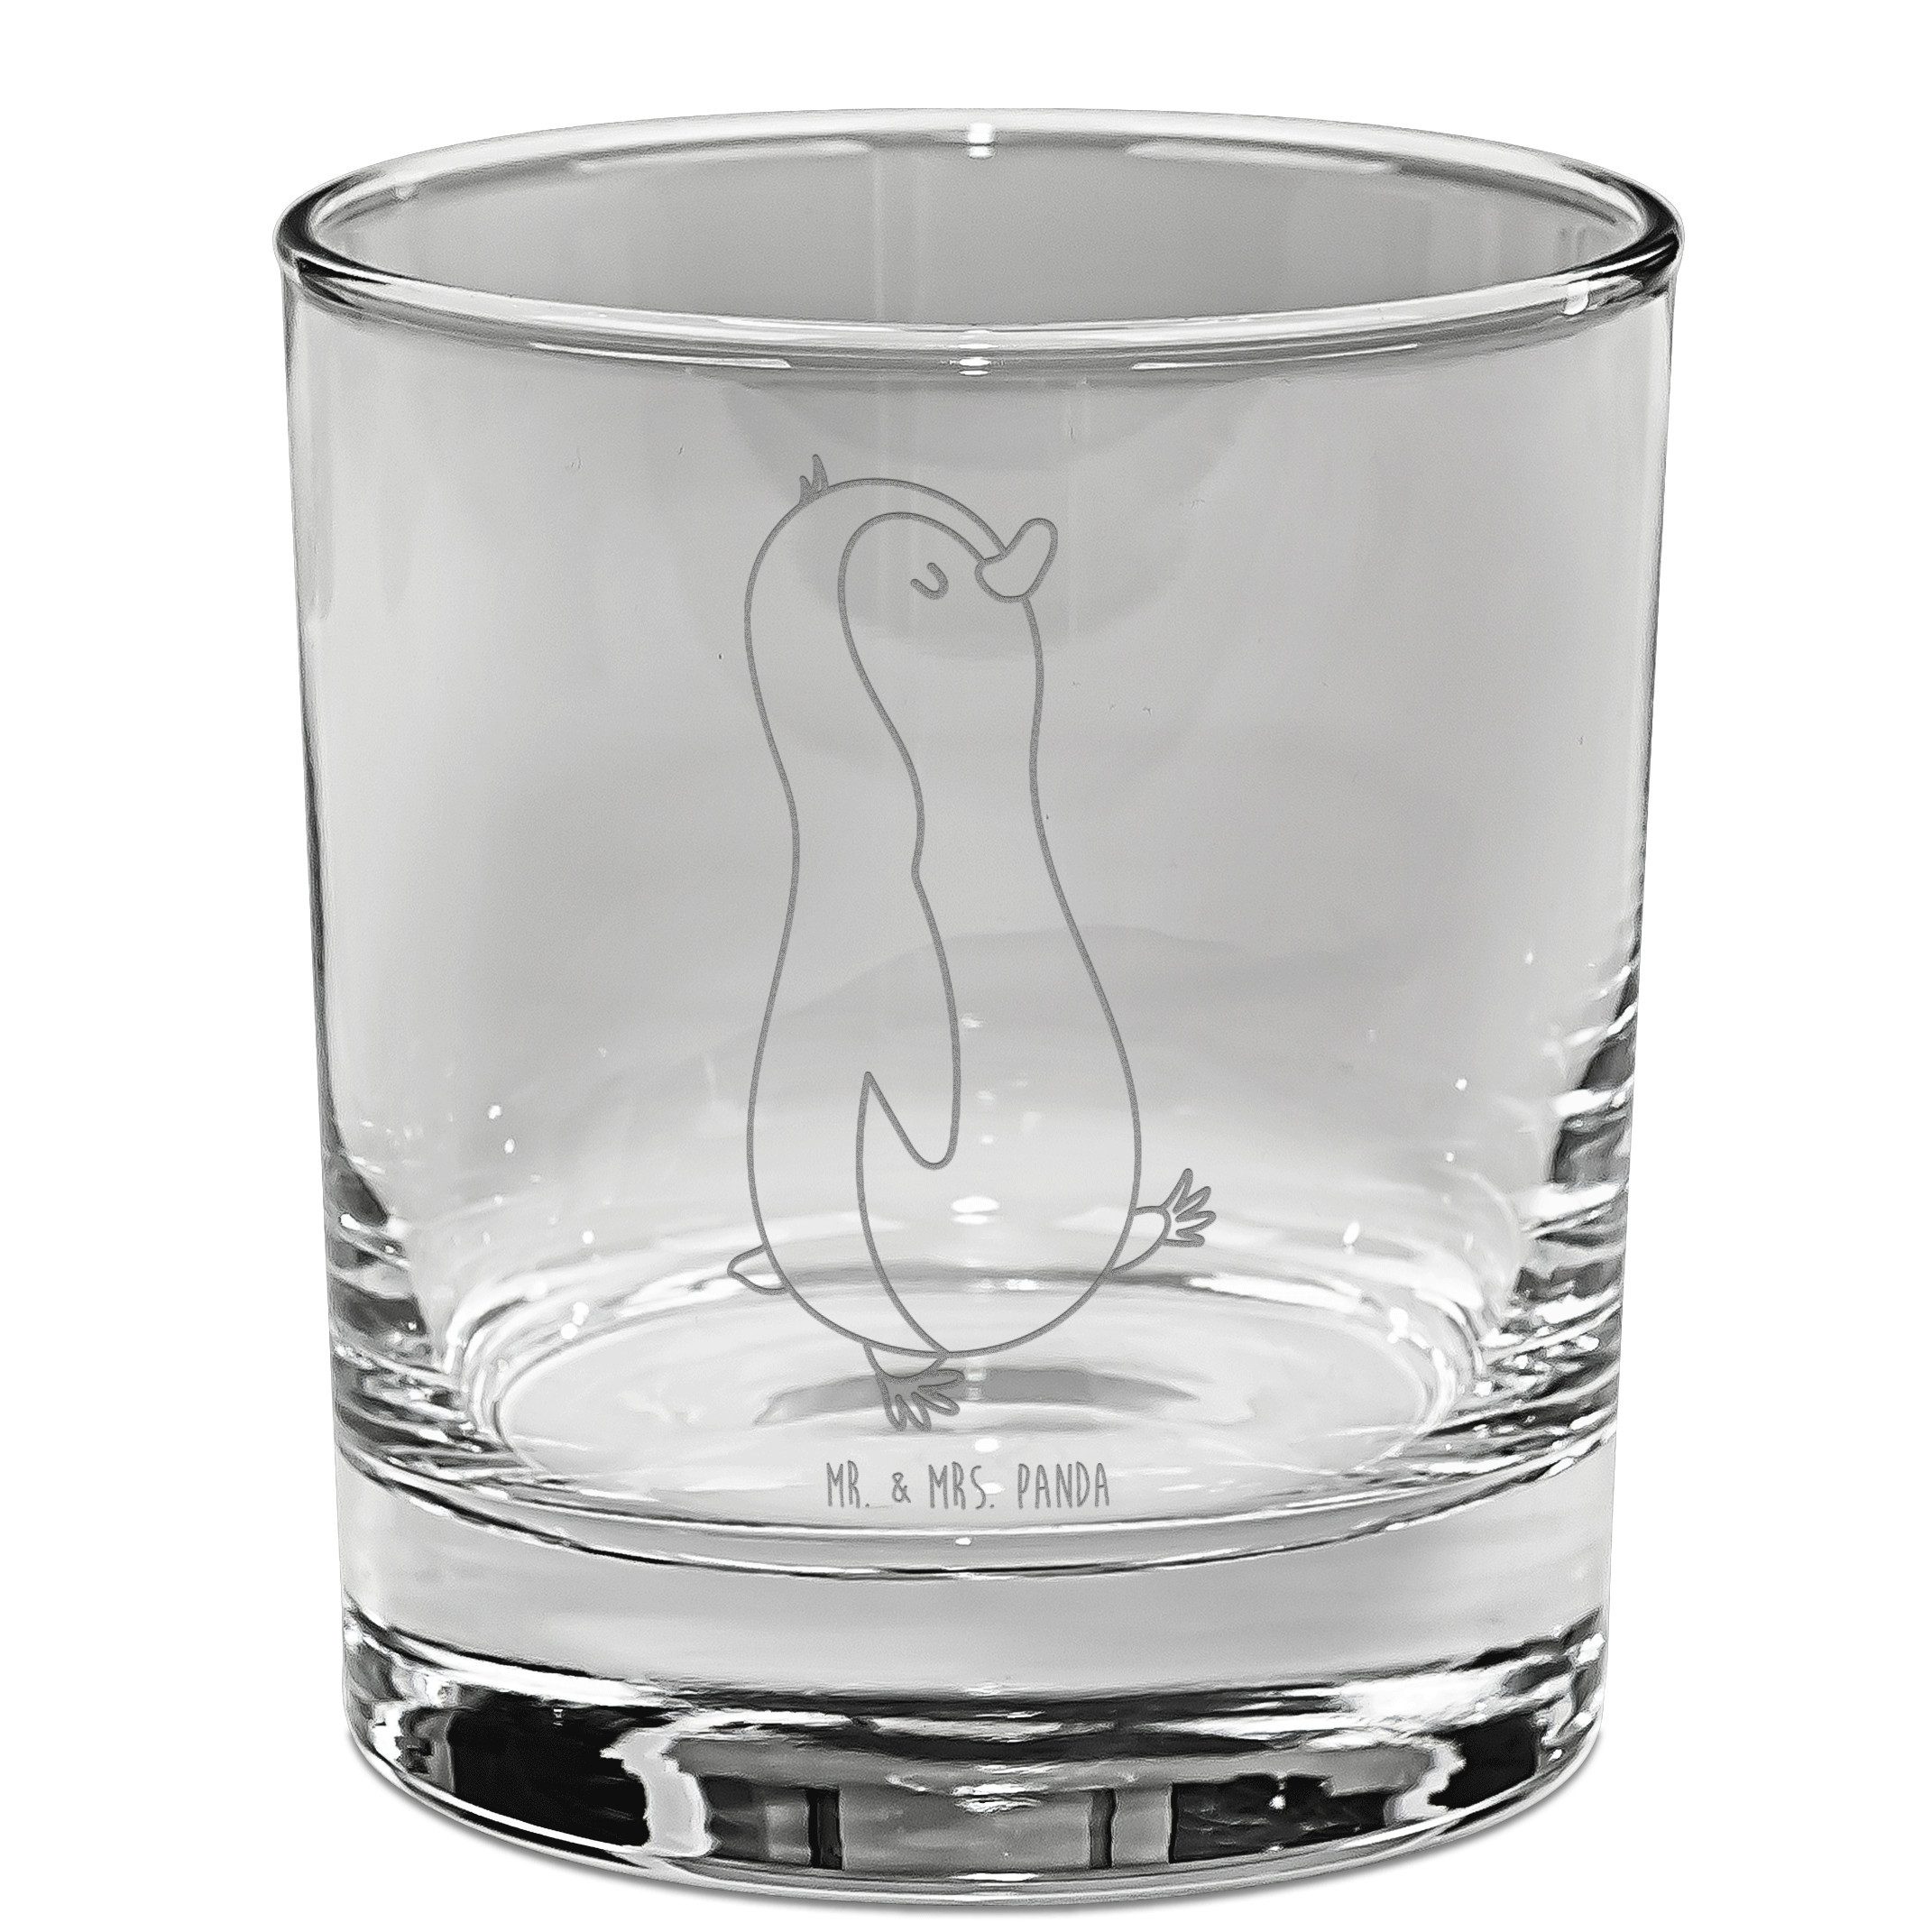 Mr. & Mrs. Panda Whiskyglas Pinguin marschieren - Transparent - Geschenk, Whiskey Glas mit Gravur, Premium Glas, Dauerhafte Gravur